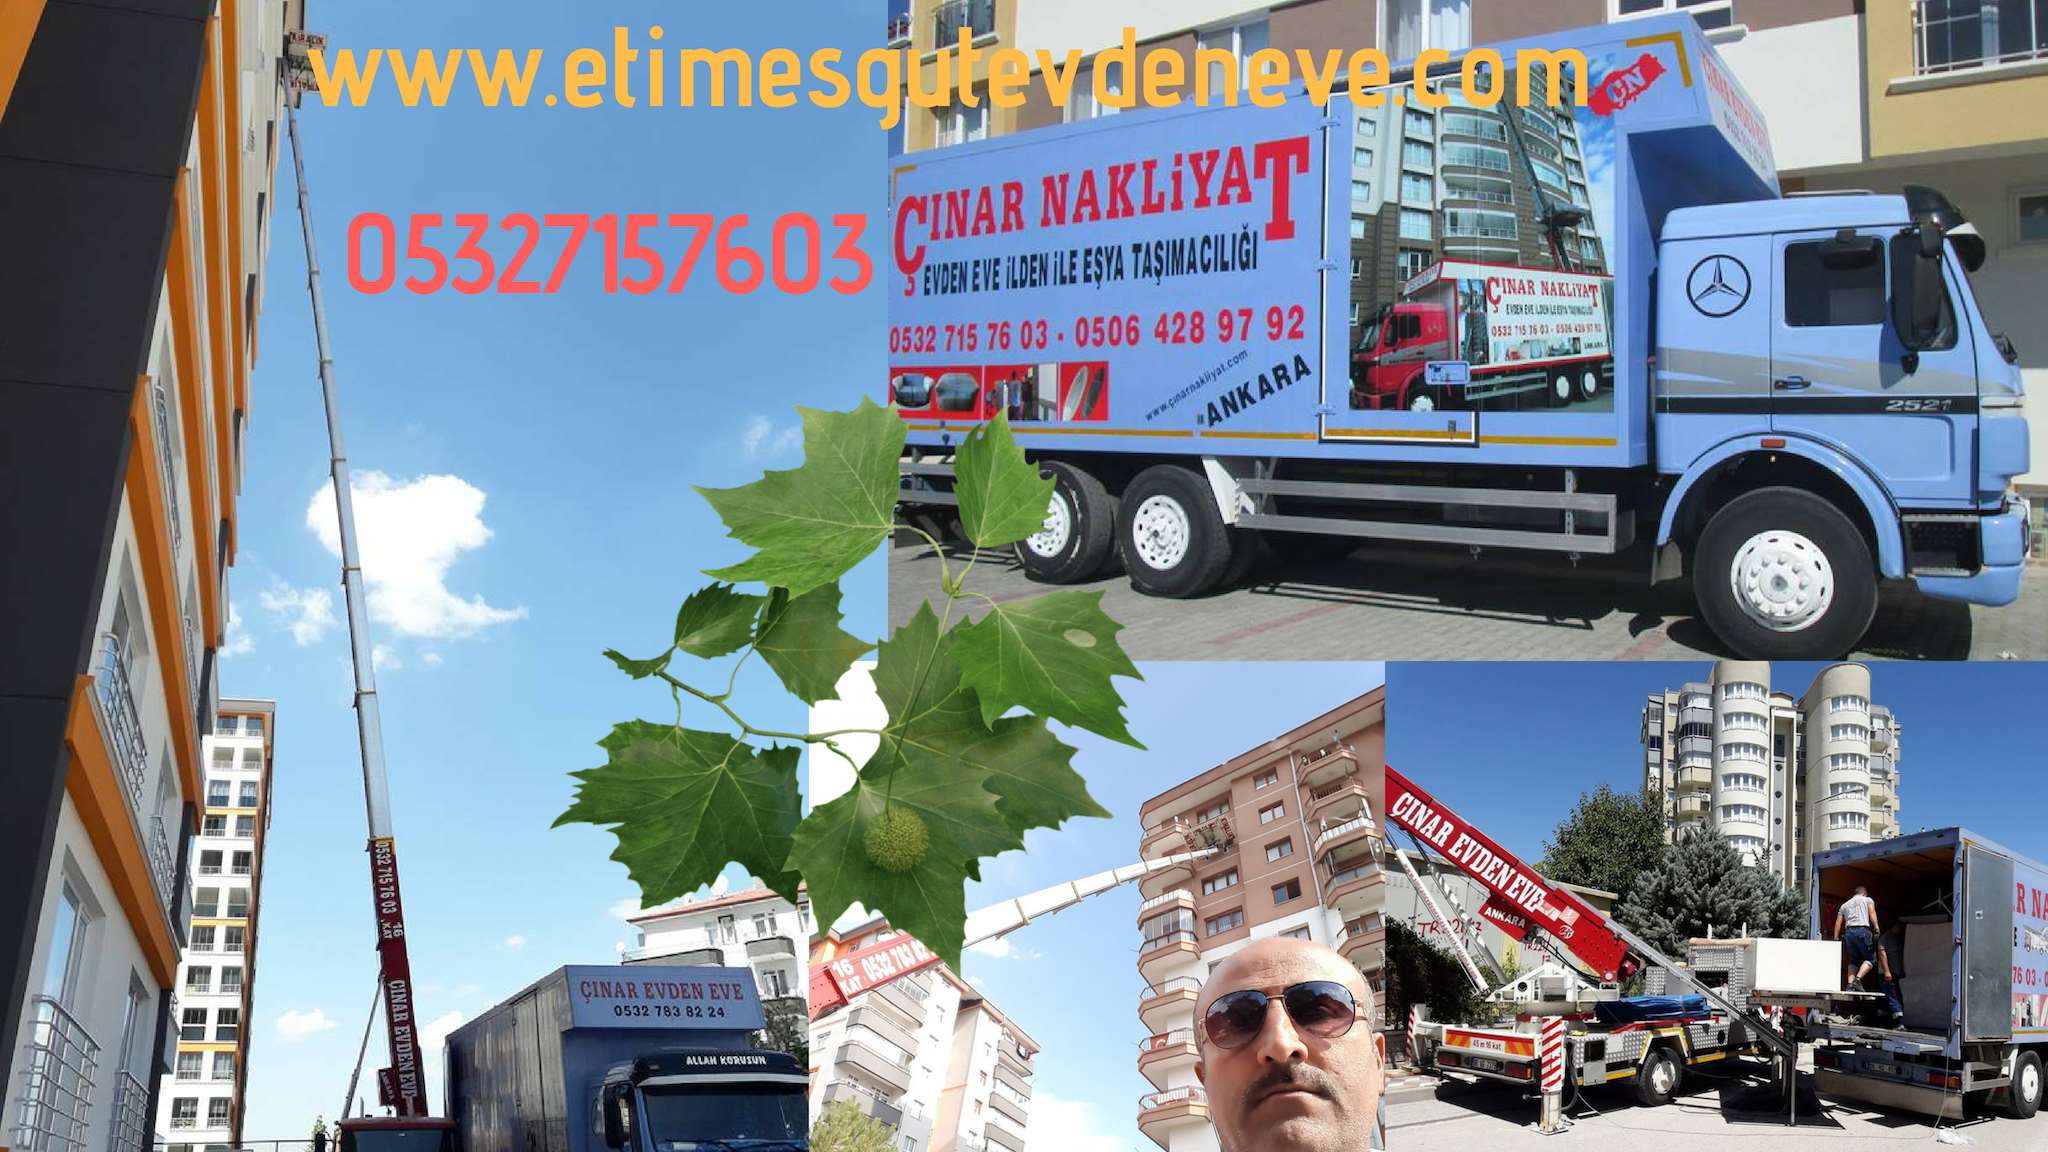 Ankara Yenimahalle Etimesgut evden eve asansörlü nakliyat etimesgut 0532 715 76 03